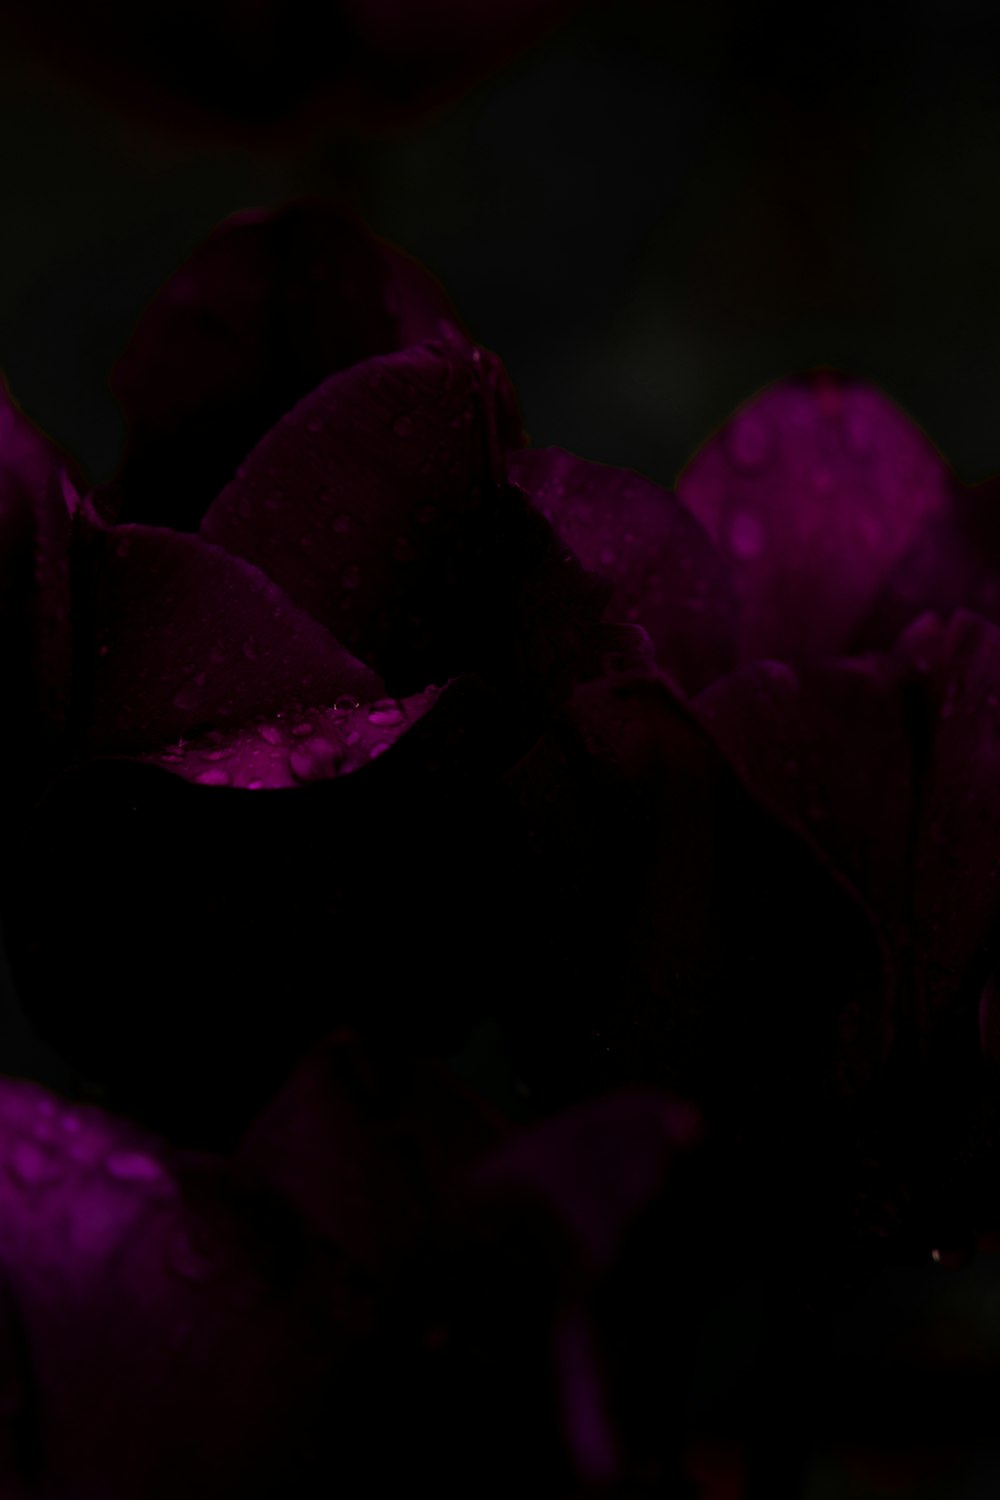 水滴が付着した紫色の花の束